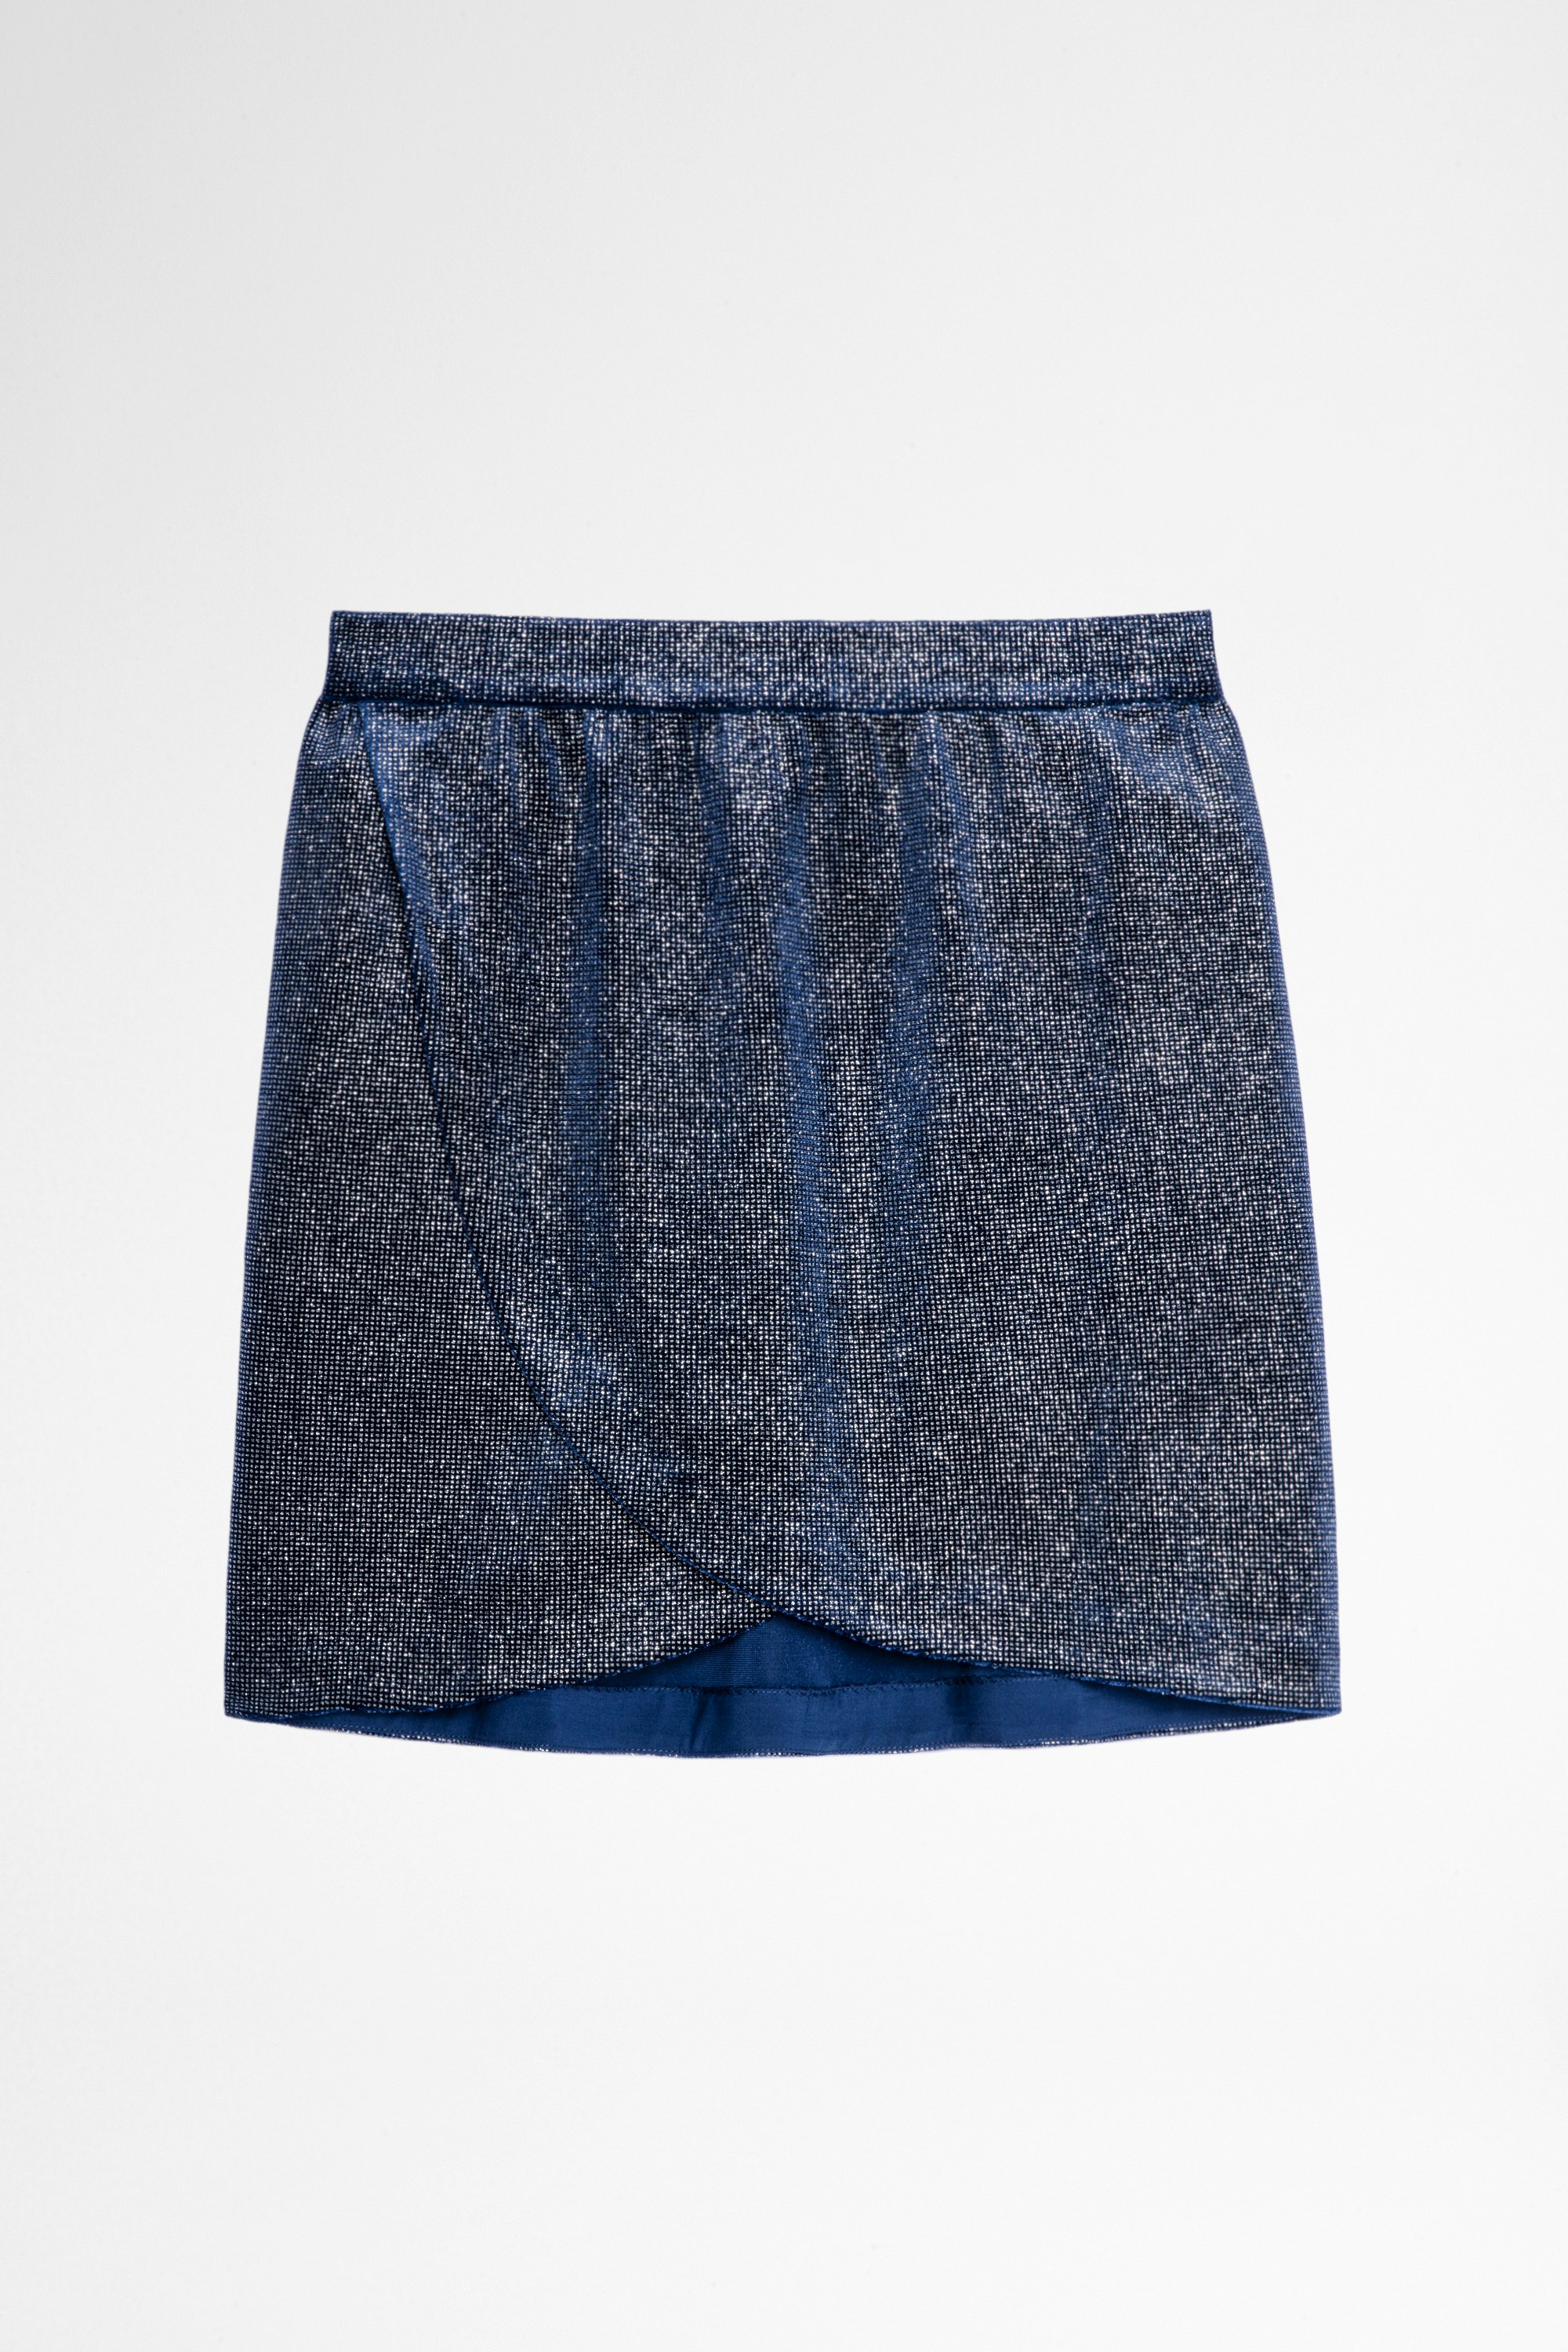 Jeveal Velvet Skirt Women's short skirt with blue glitter